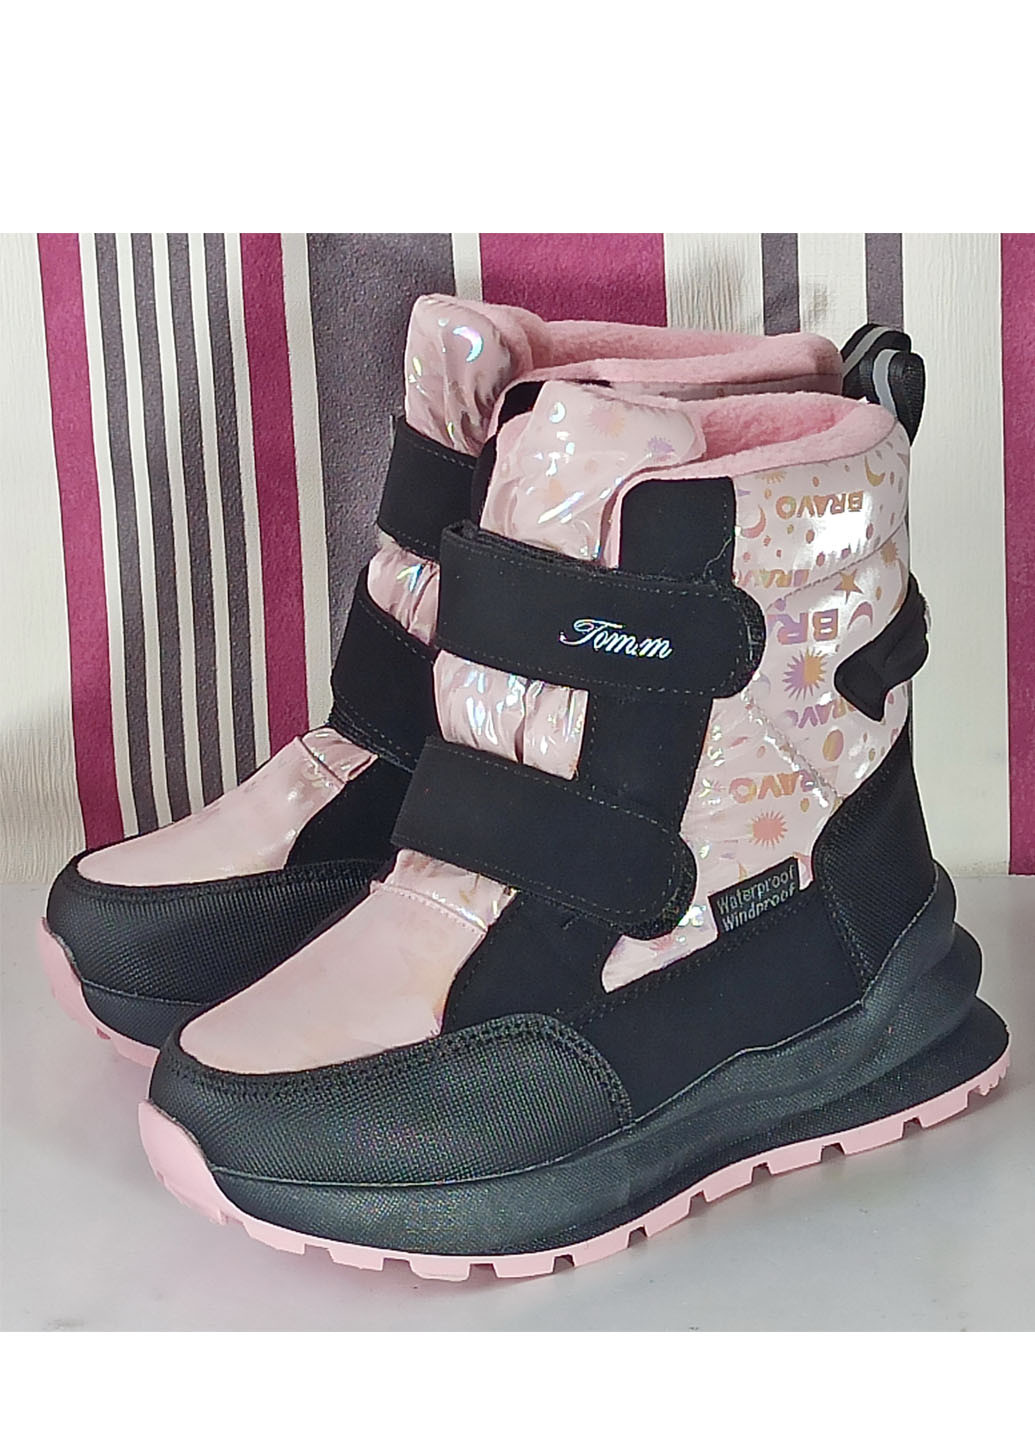 Розовые повседневные зимние детские зимние ботинки для девочки на овчине 10789w 28-18см 30-19,5см 31-20см Tom.M